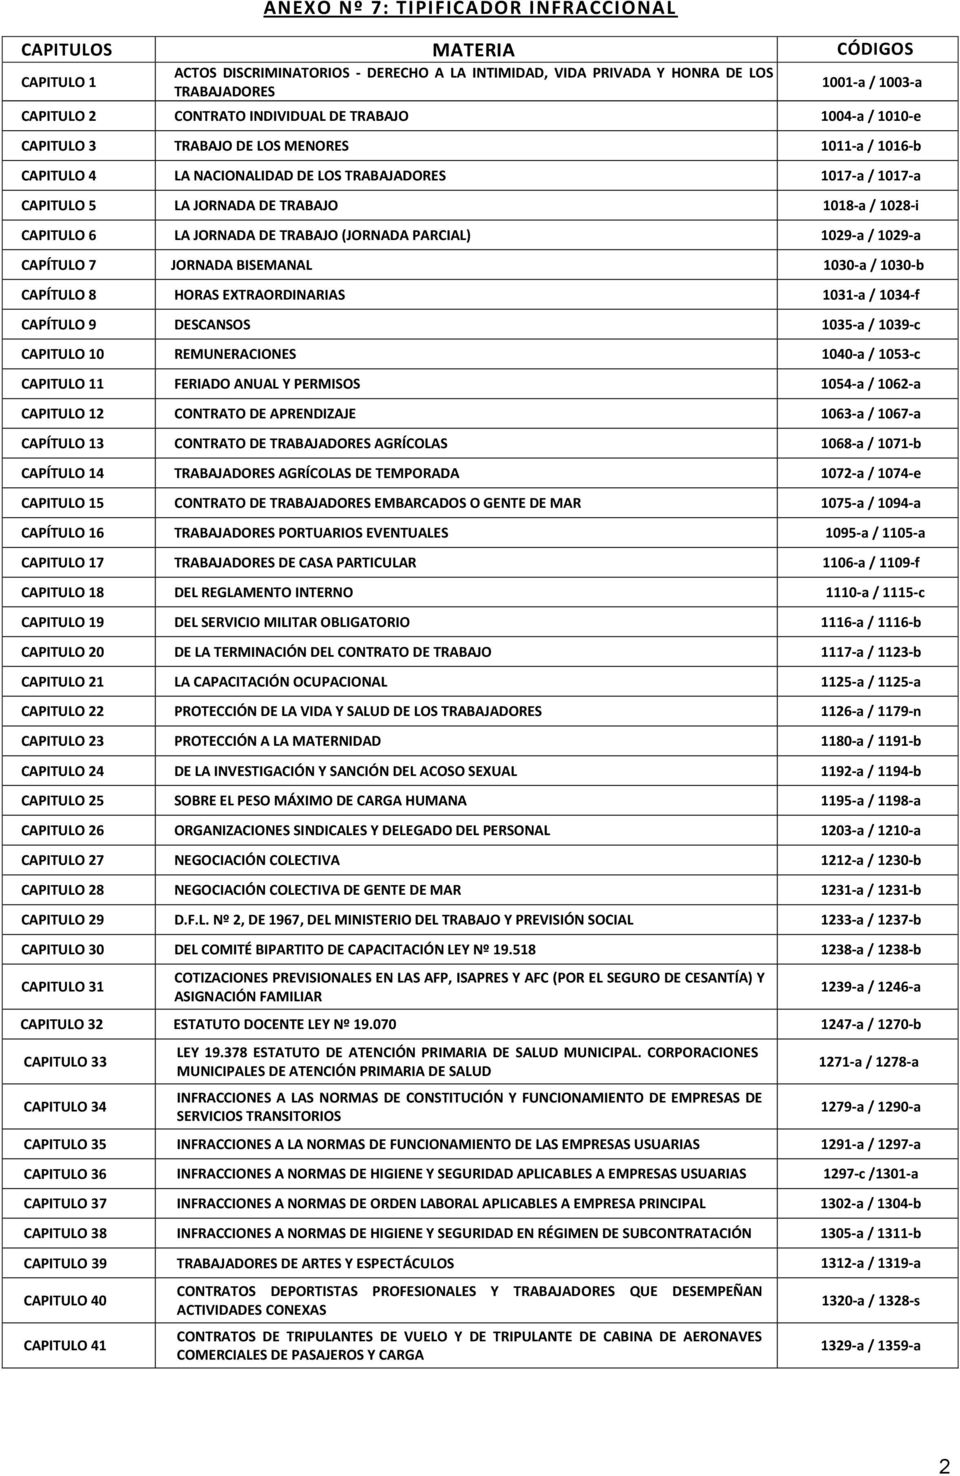 CAPITULO 6 LA JORNADA DE TRABAJO (JORNADA PARCIAL) 1029-a / 1029-a CAPÍTULO 7 JORNADA BISEMANAL 1030-a / 1030-b CAPÍTULO 8 HORAS EXTRAORDINARIAS 1031-a / 1034-f CAPÍTULO 9 DESCANSOS 1035-a / 1039-c